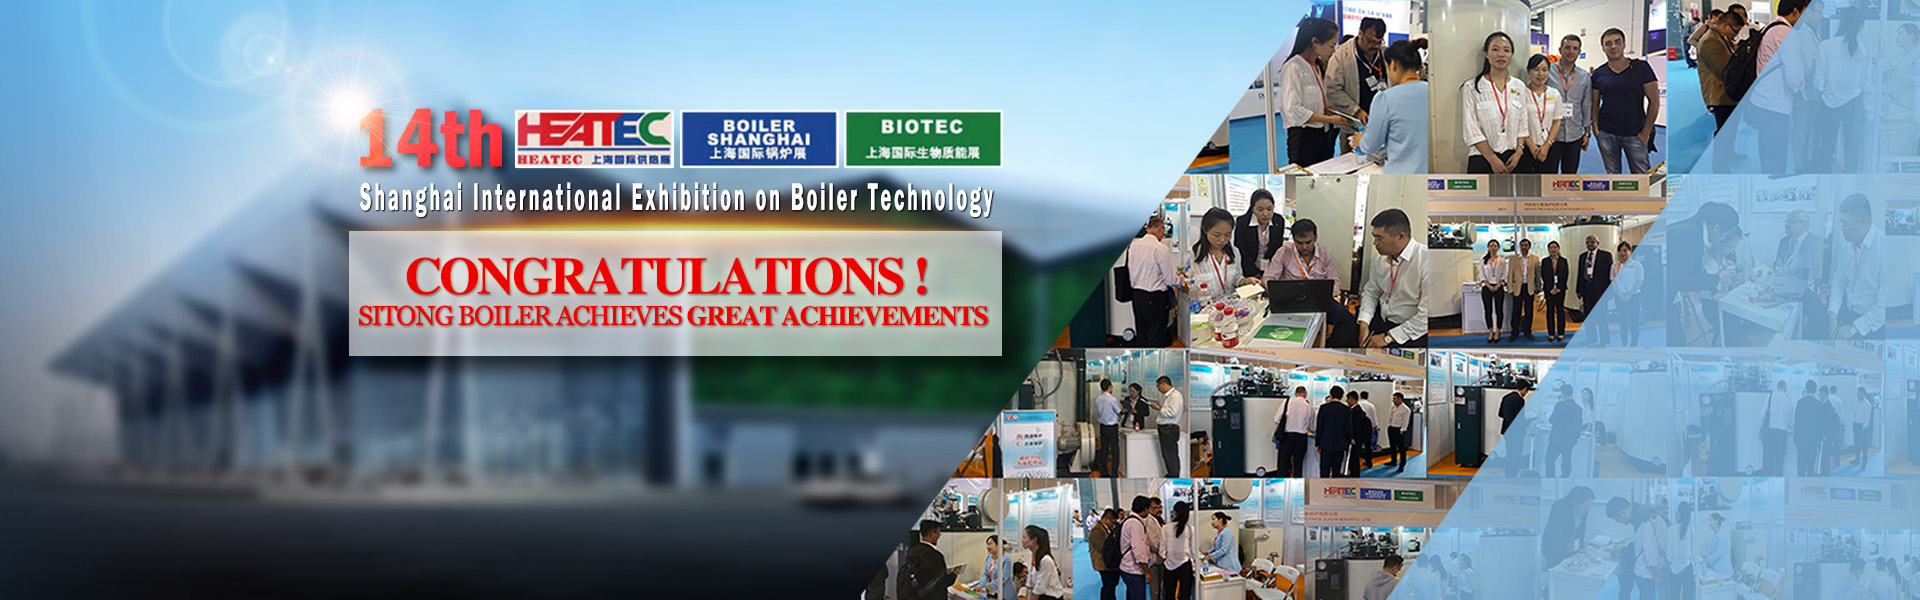 Sitong Boiler exhibition achievement 